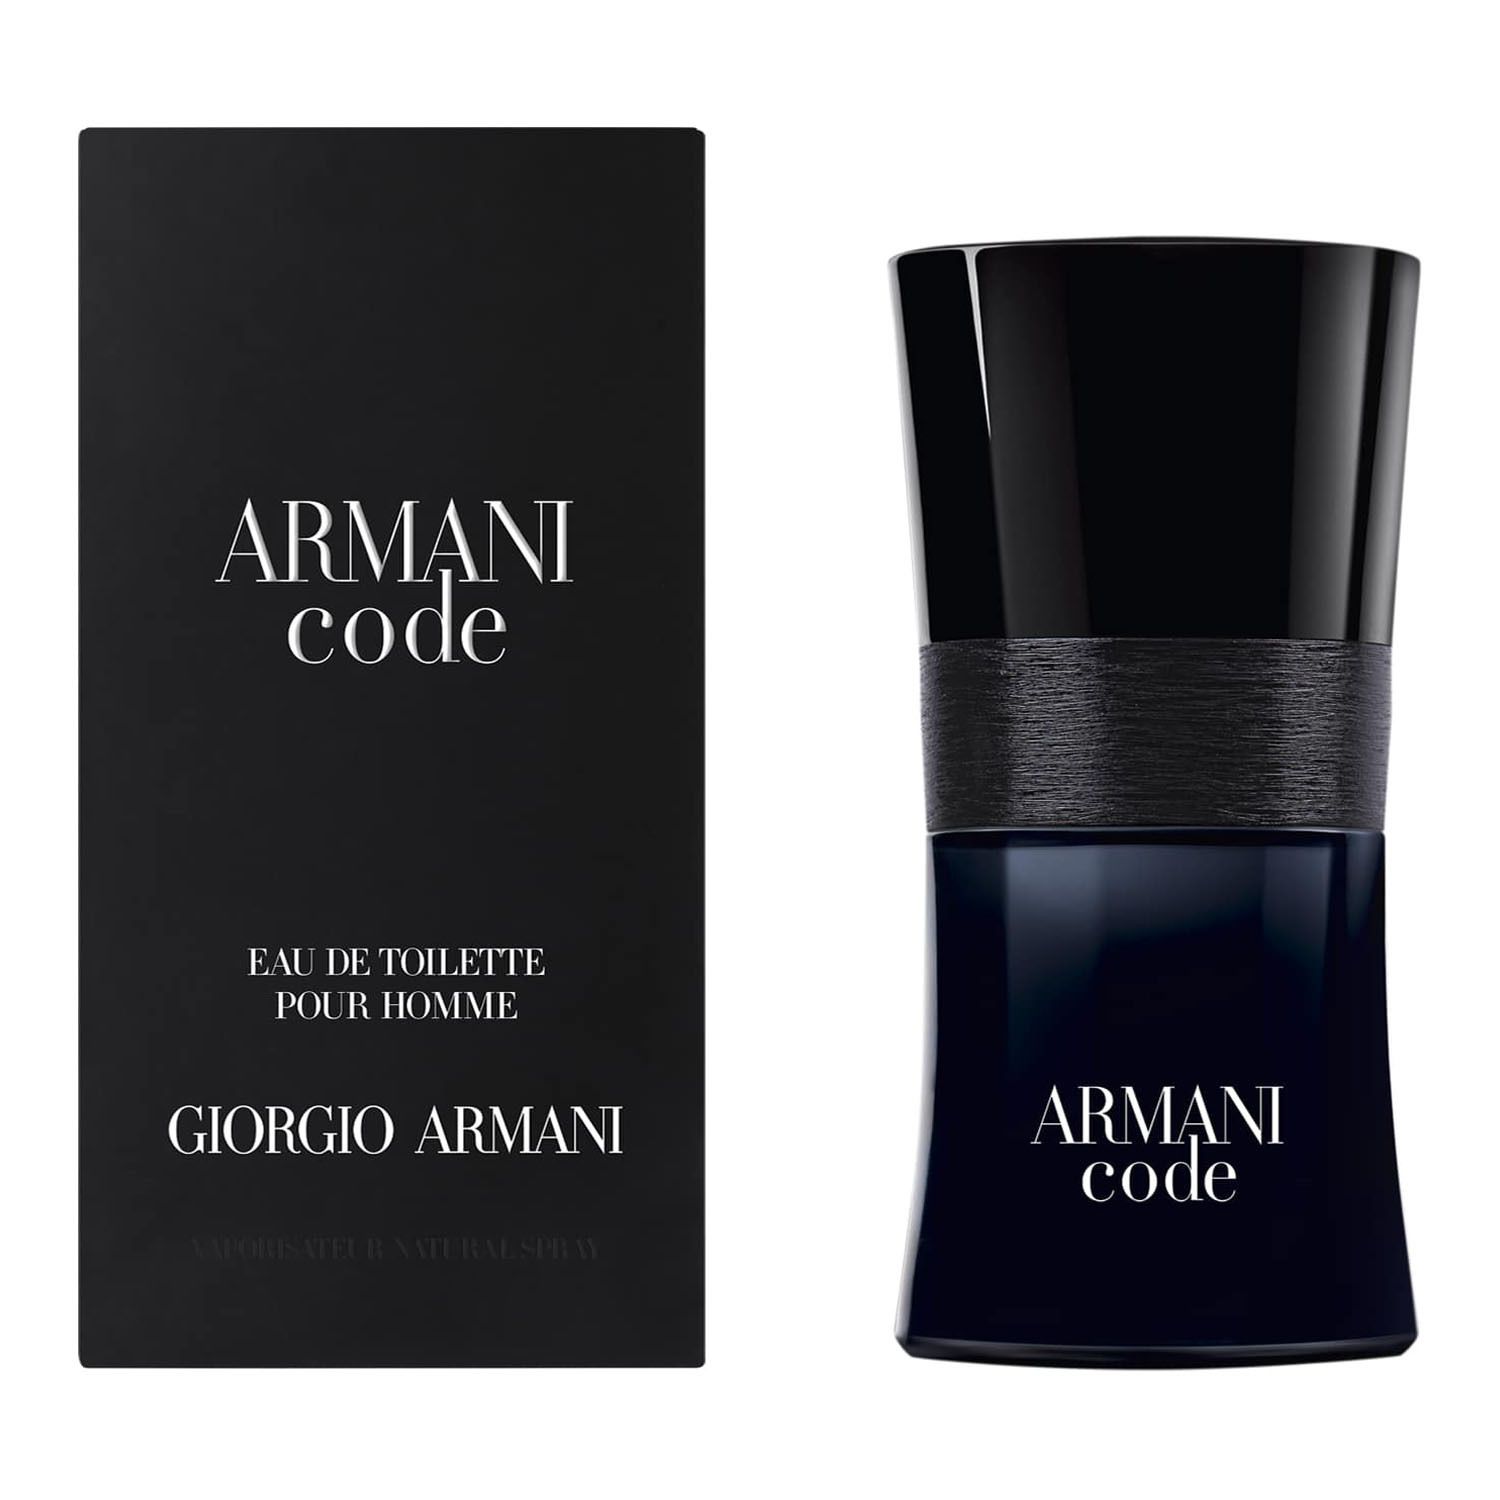 armani code men's cologne